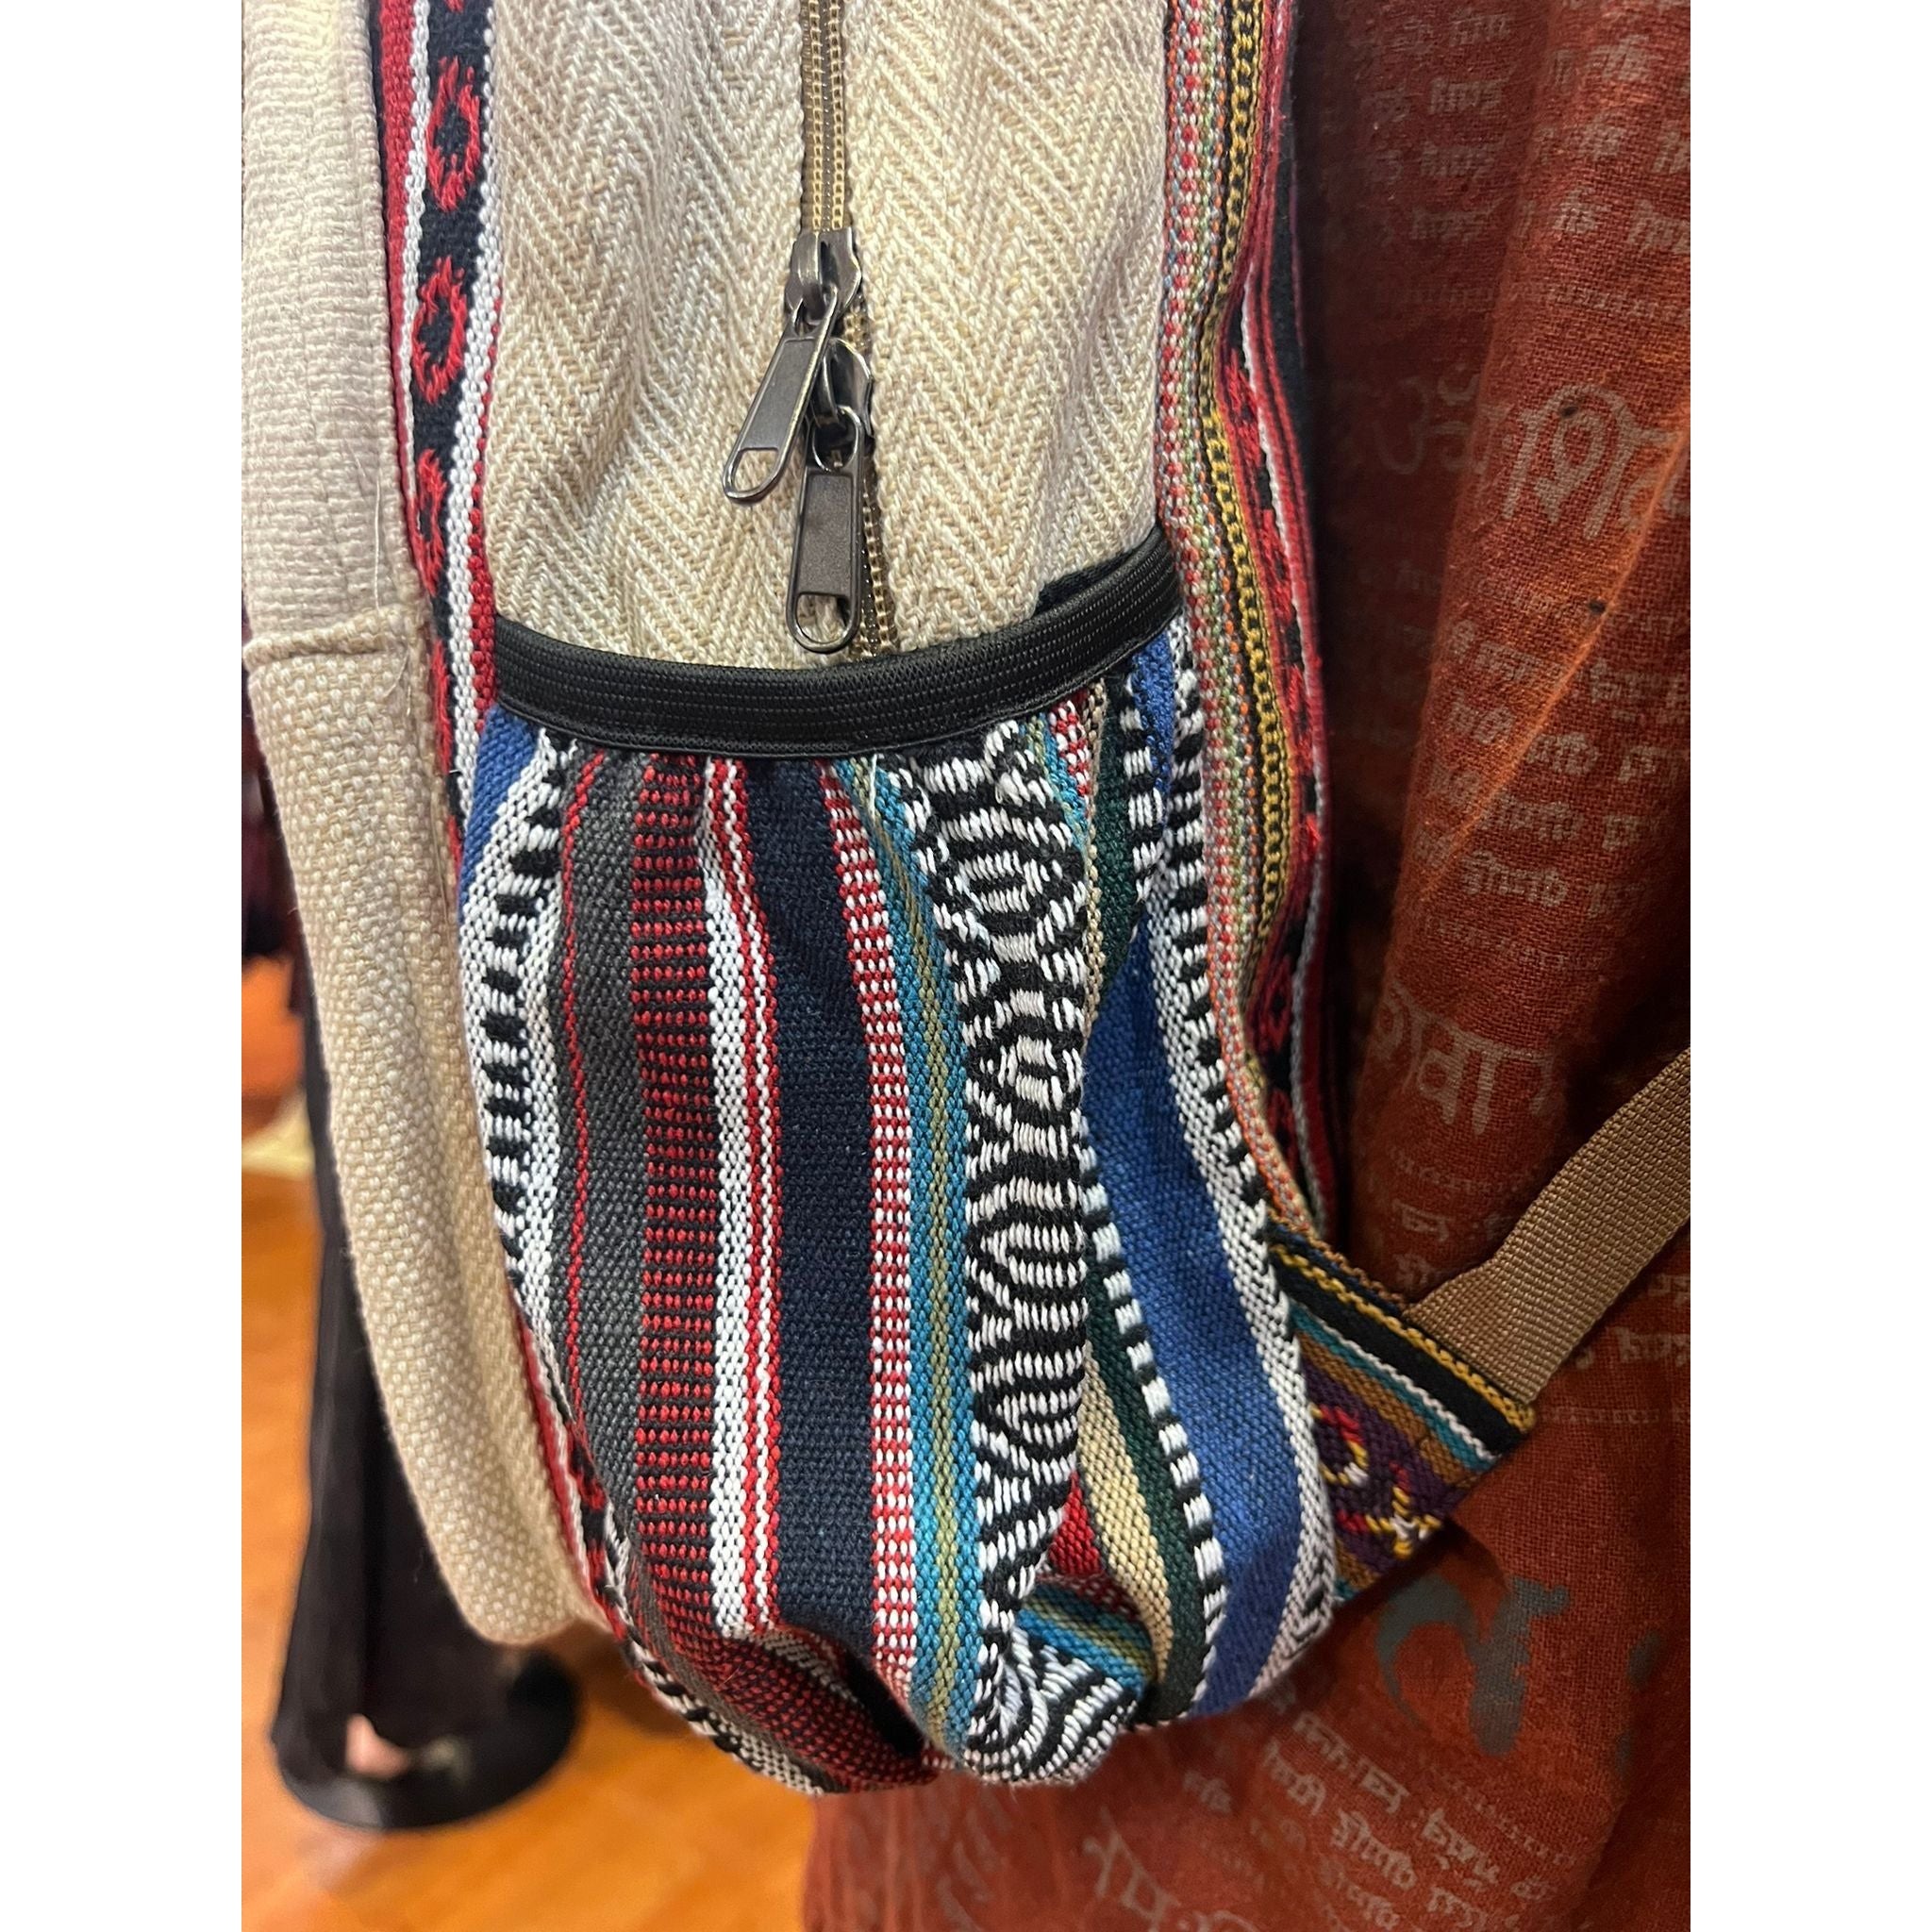 Embroidery Mushroom Hemp Backpack